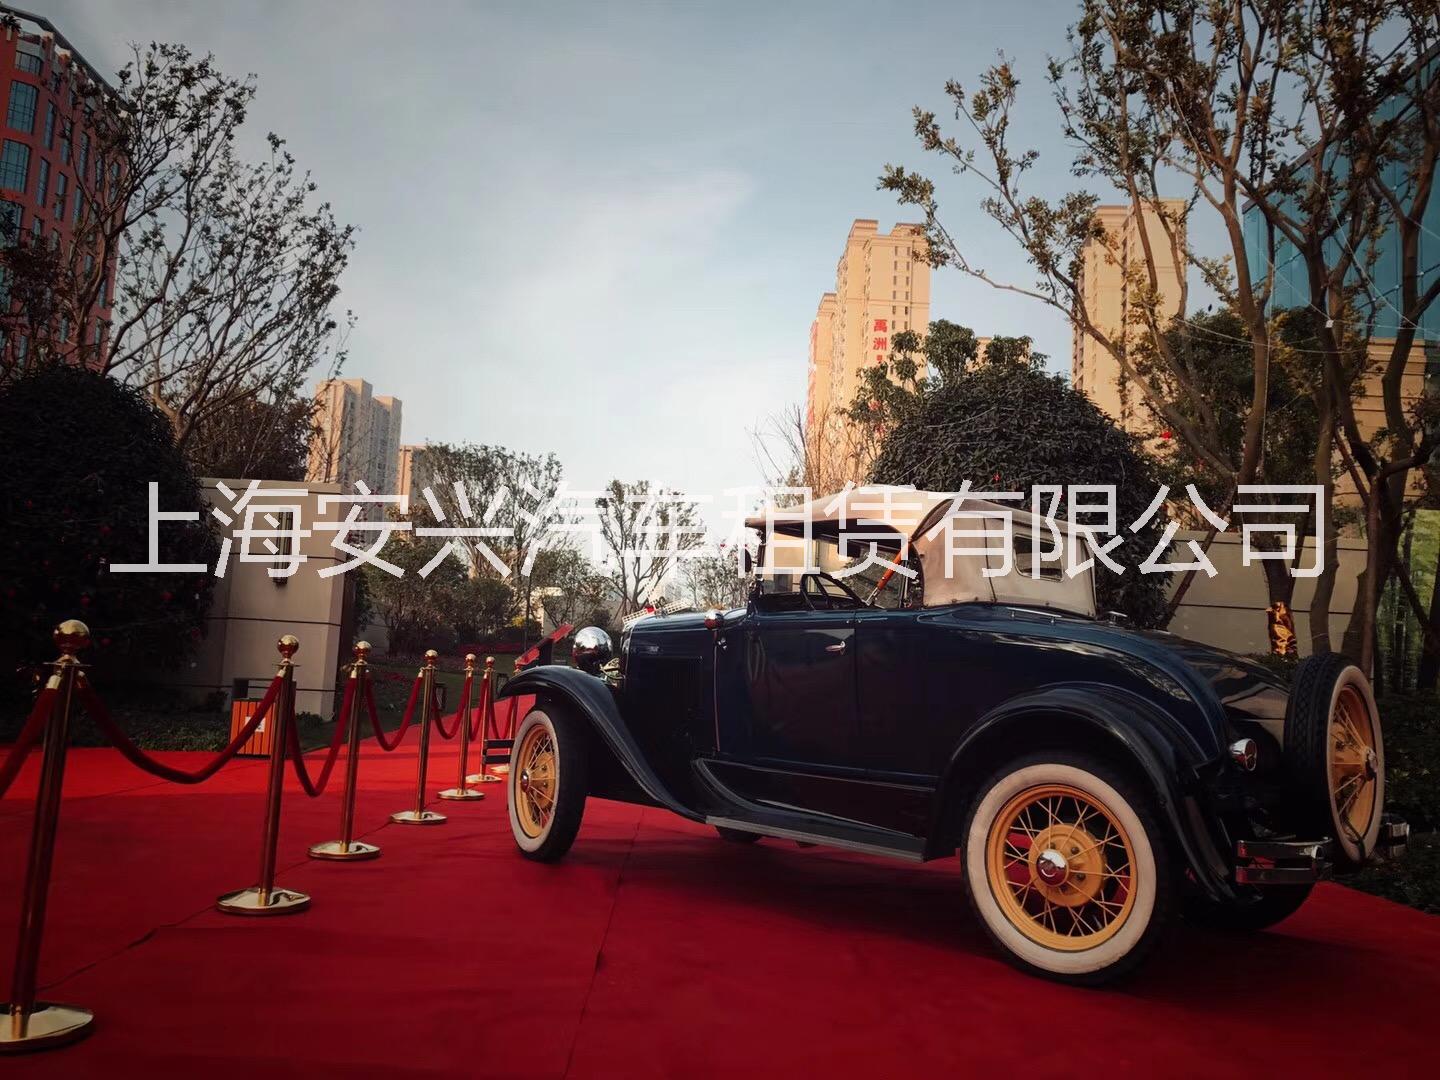 安徽租借阿斯顿马丁古董车广告宣传，江西借用阿斯顿马丁古董车写真拍摄